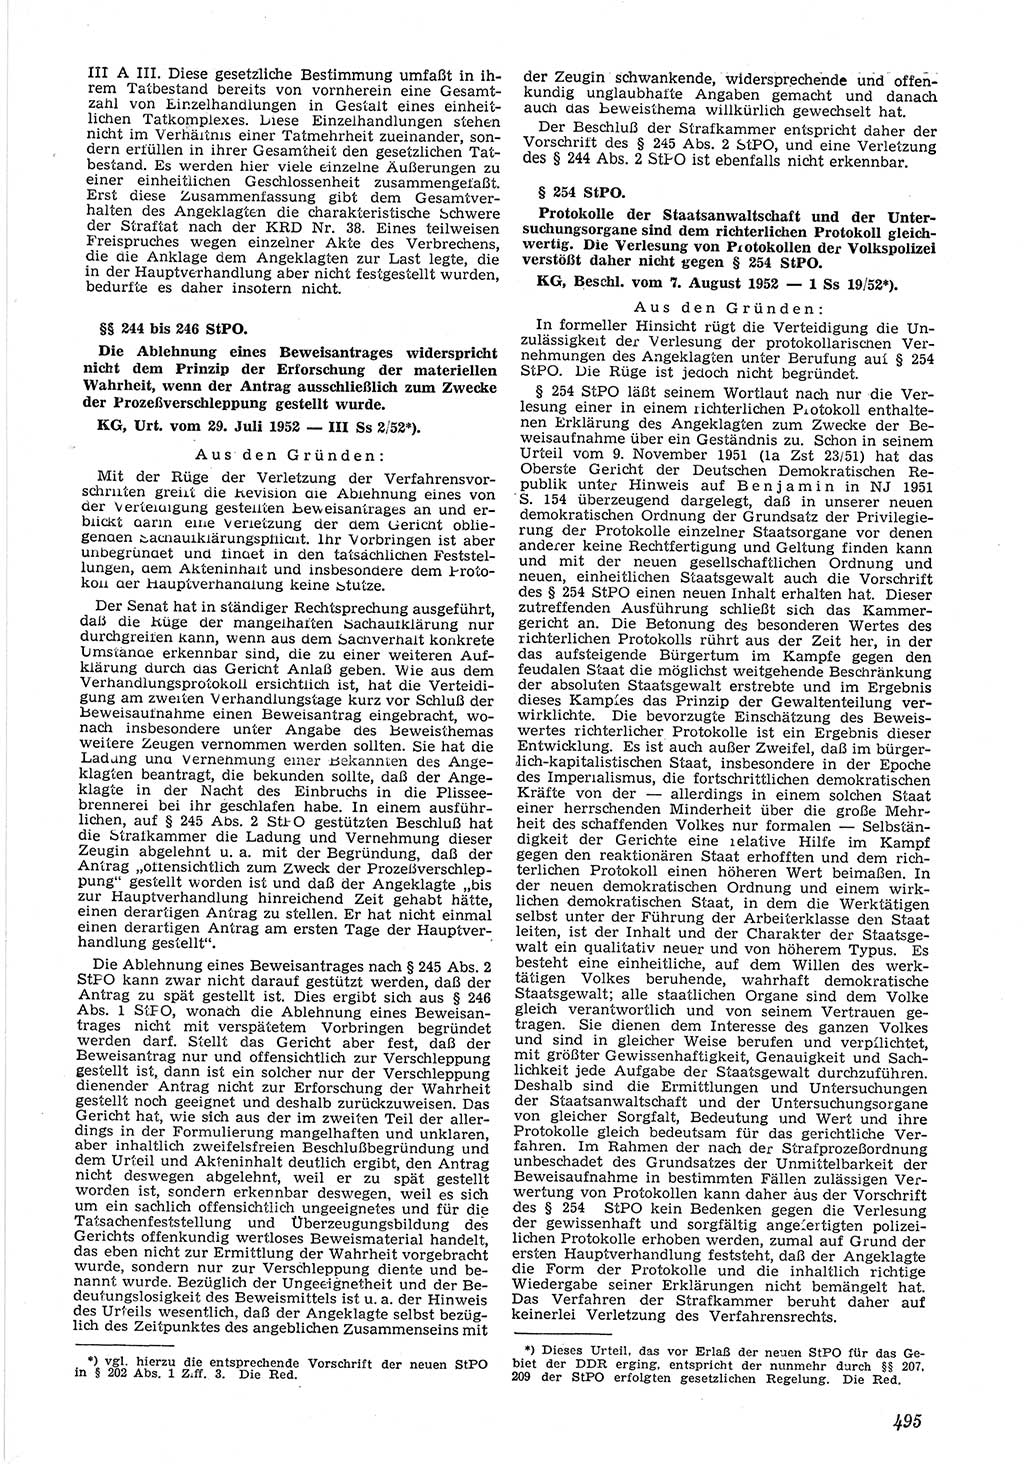 Neue Justiz (NJ), Zeitschrift für Recht und Rechtswissenschaft [Deutsche Demokratische Republik (DDR)], 6. Jahrgang 1952, Seite 495 (NJ DDR 1952, S. 495)